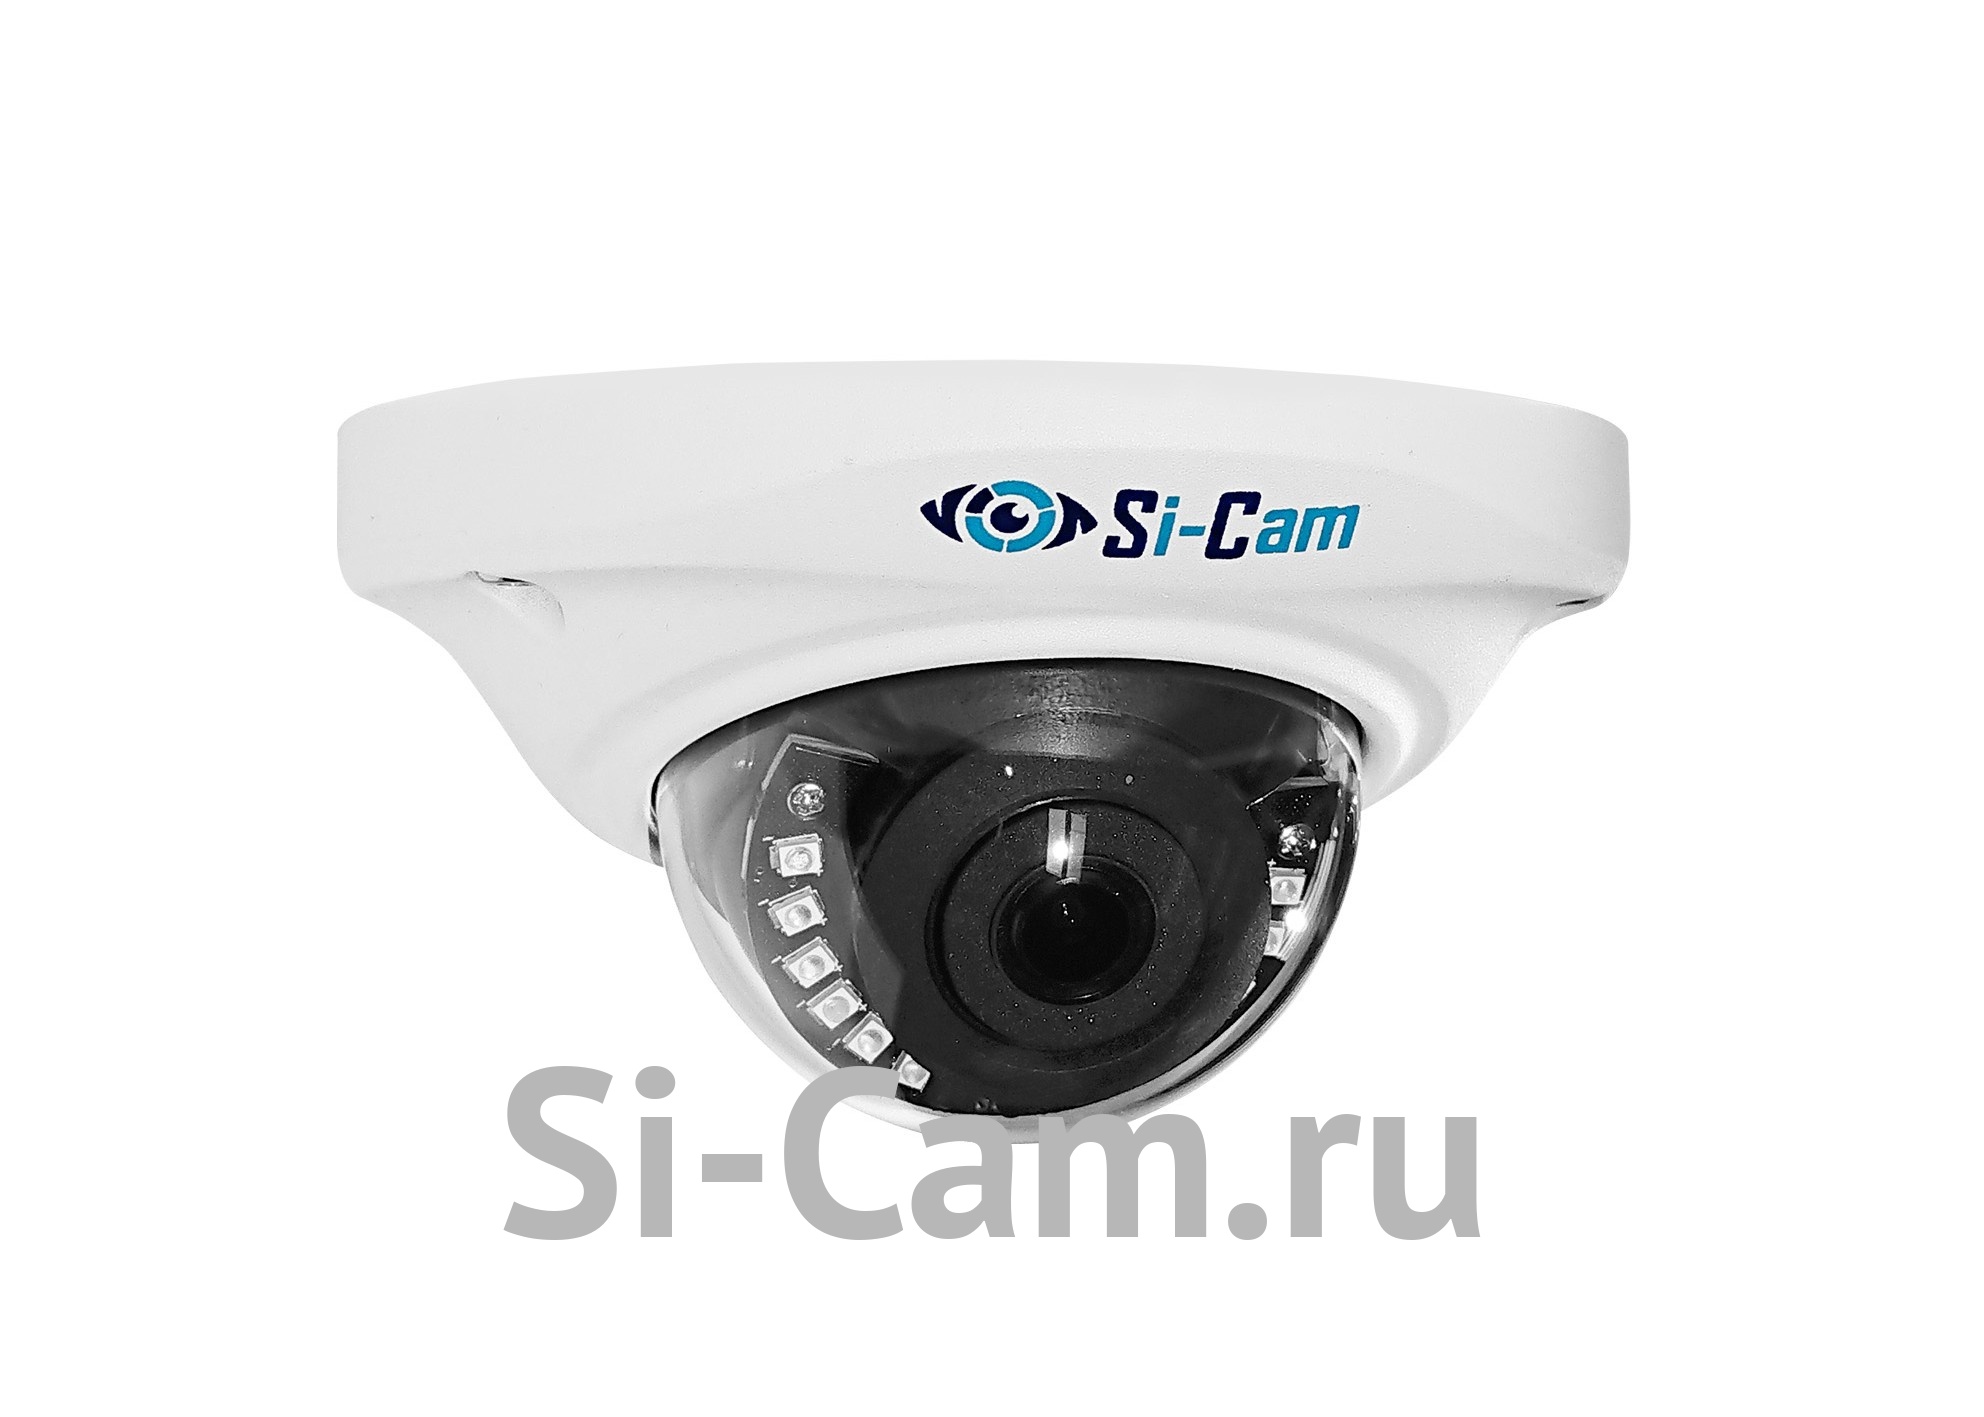 SC-DSS406F IR - Антивандальная купольная IP видеокамера 2/3/4 Mpx с фиксированным объективом (1.7F, белый, mic., LED)